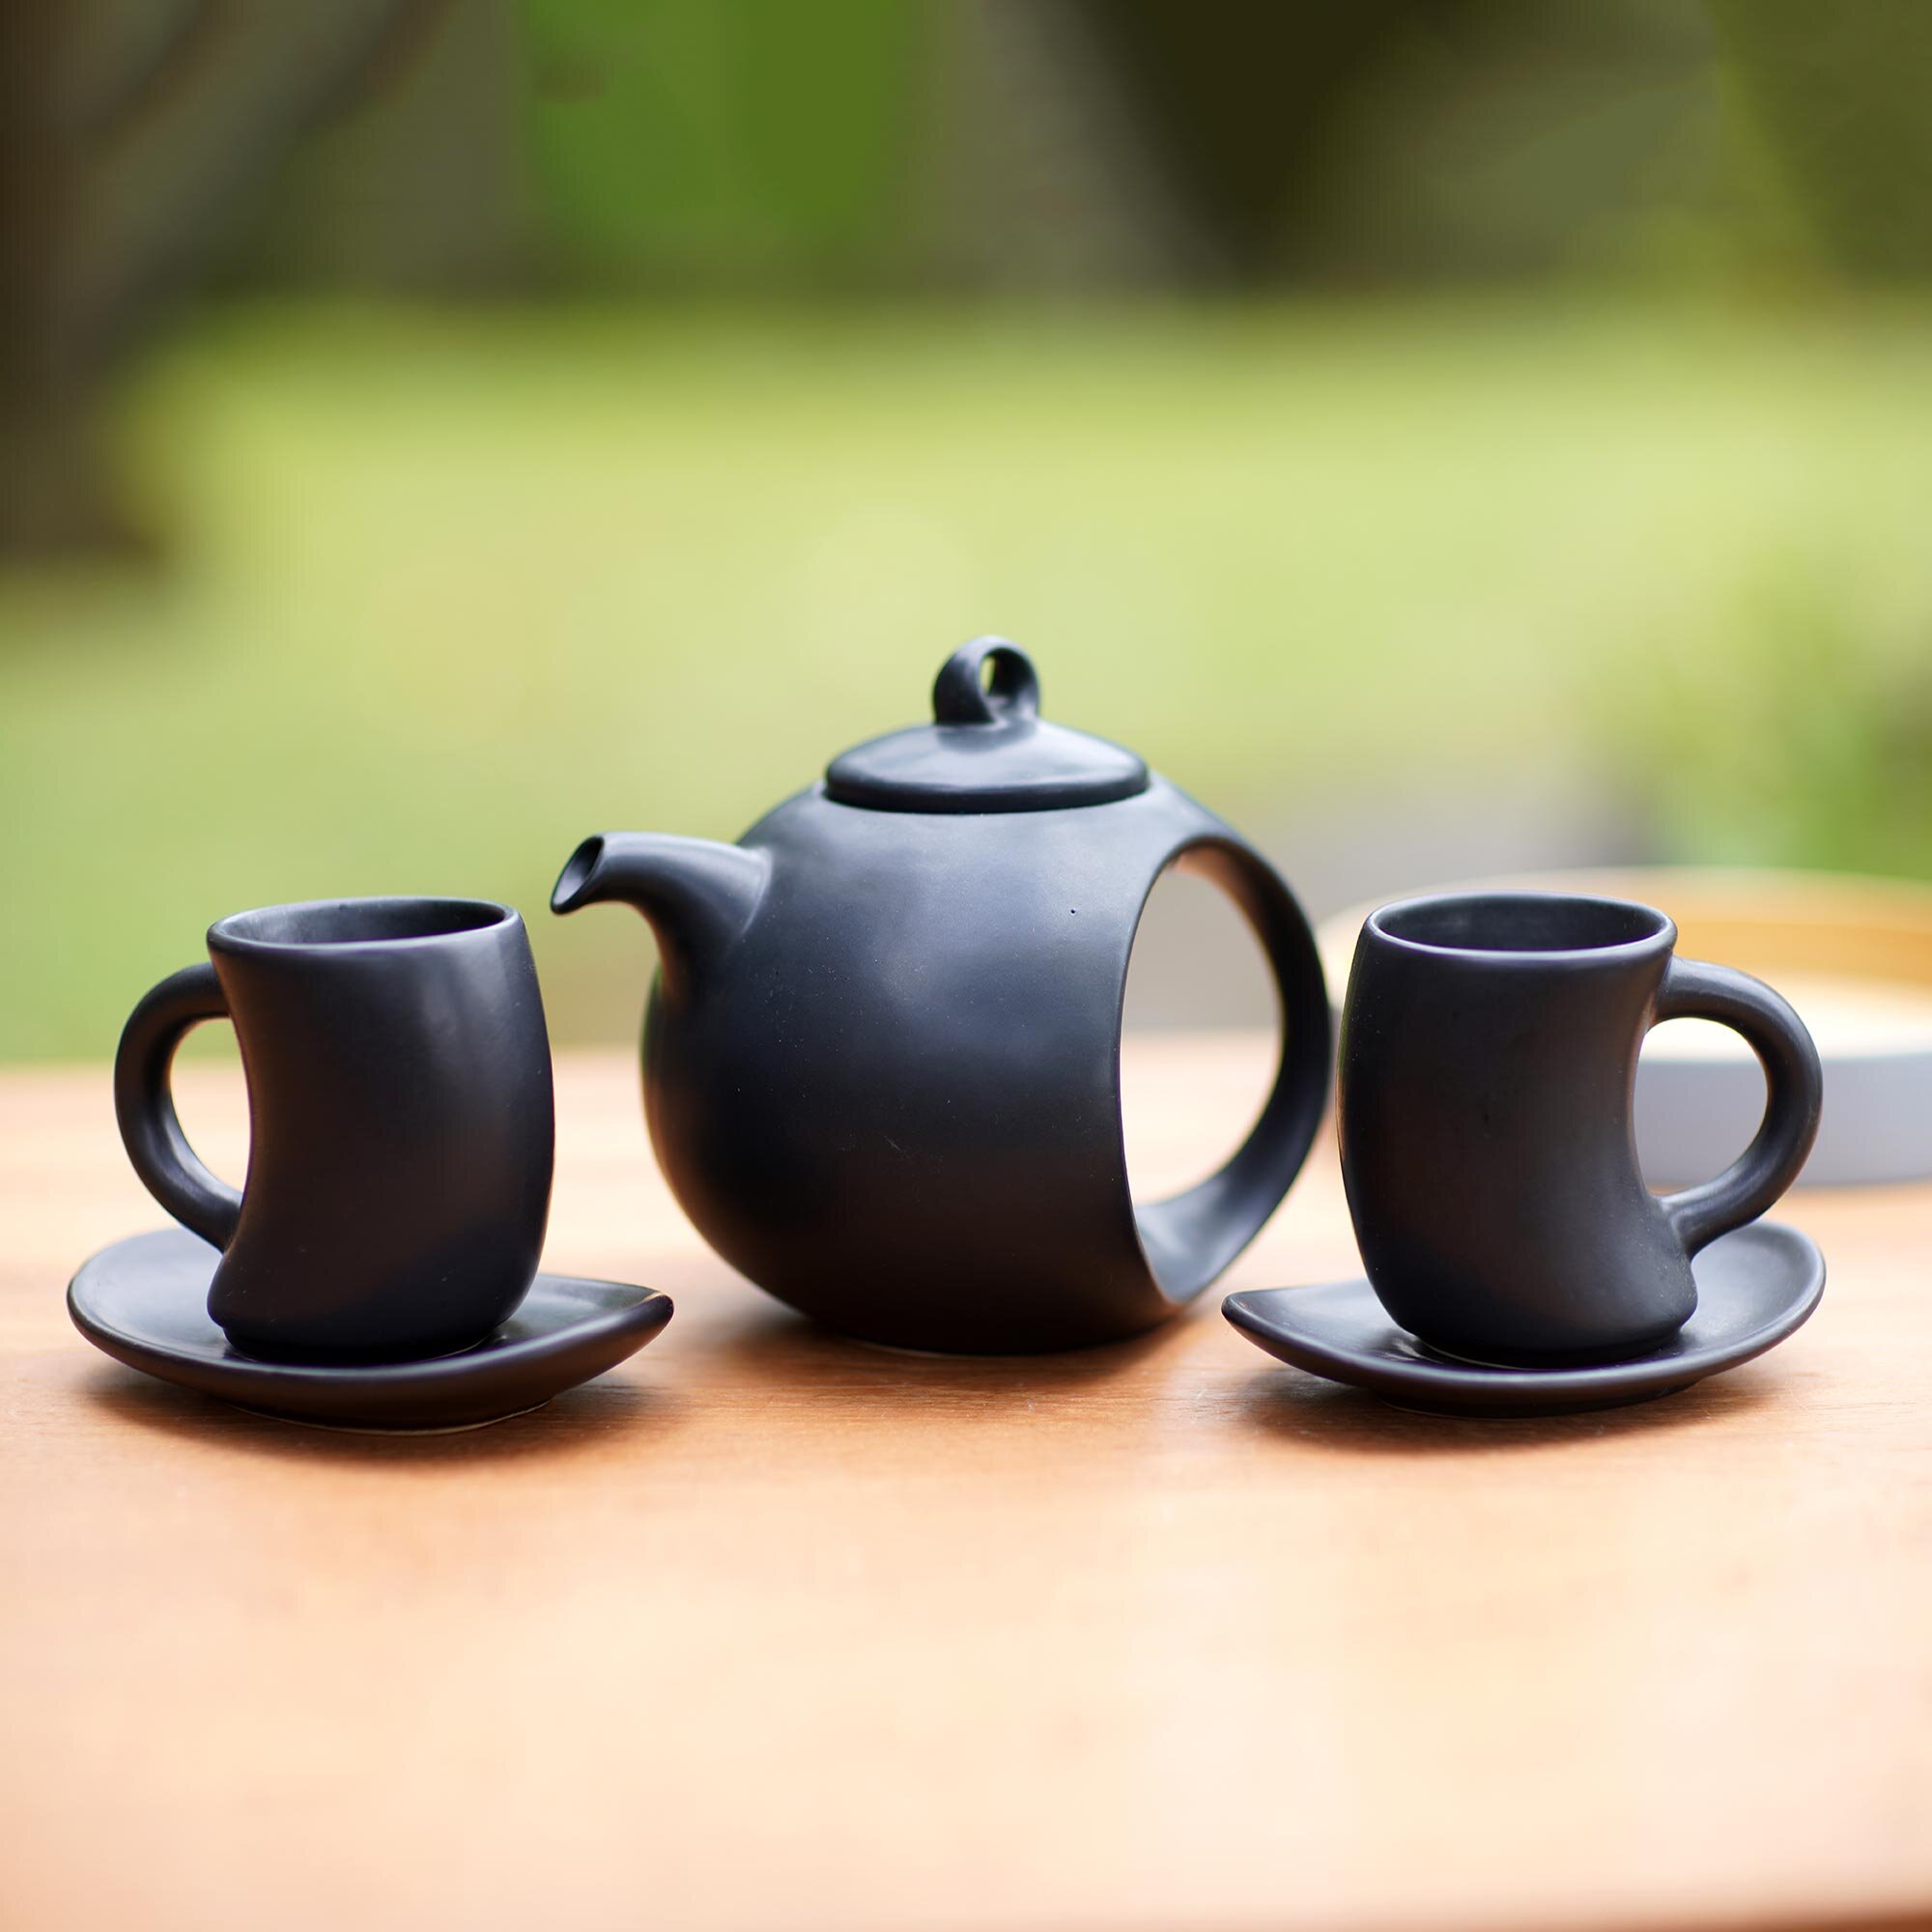 Xiangong 47oz. Teapot